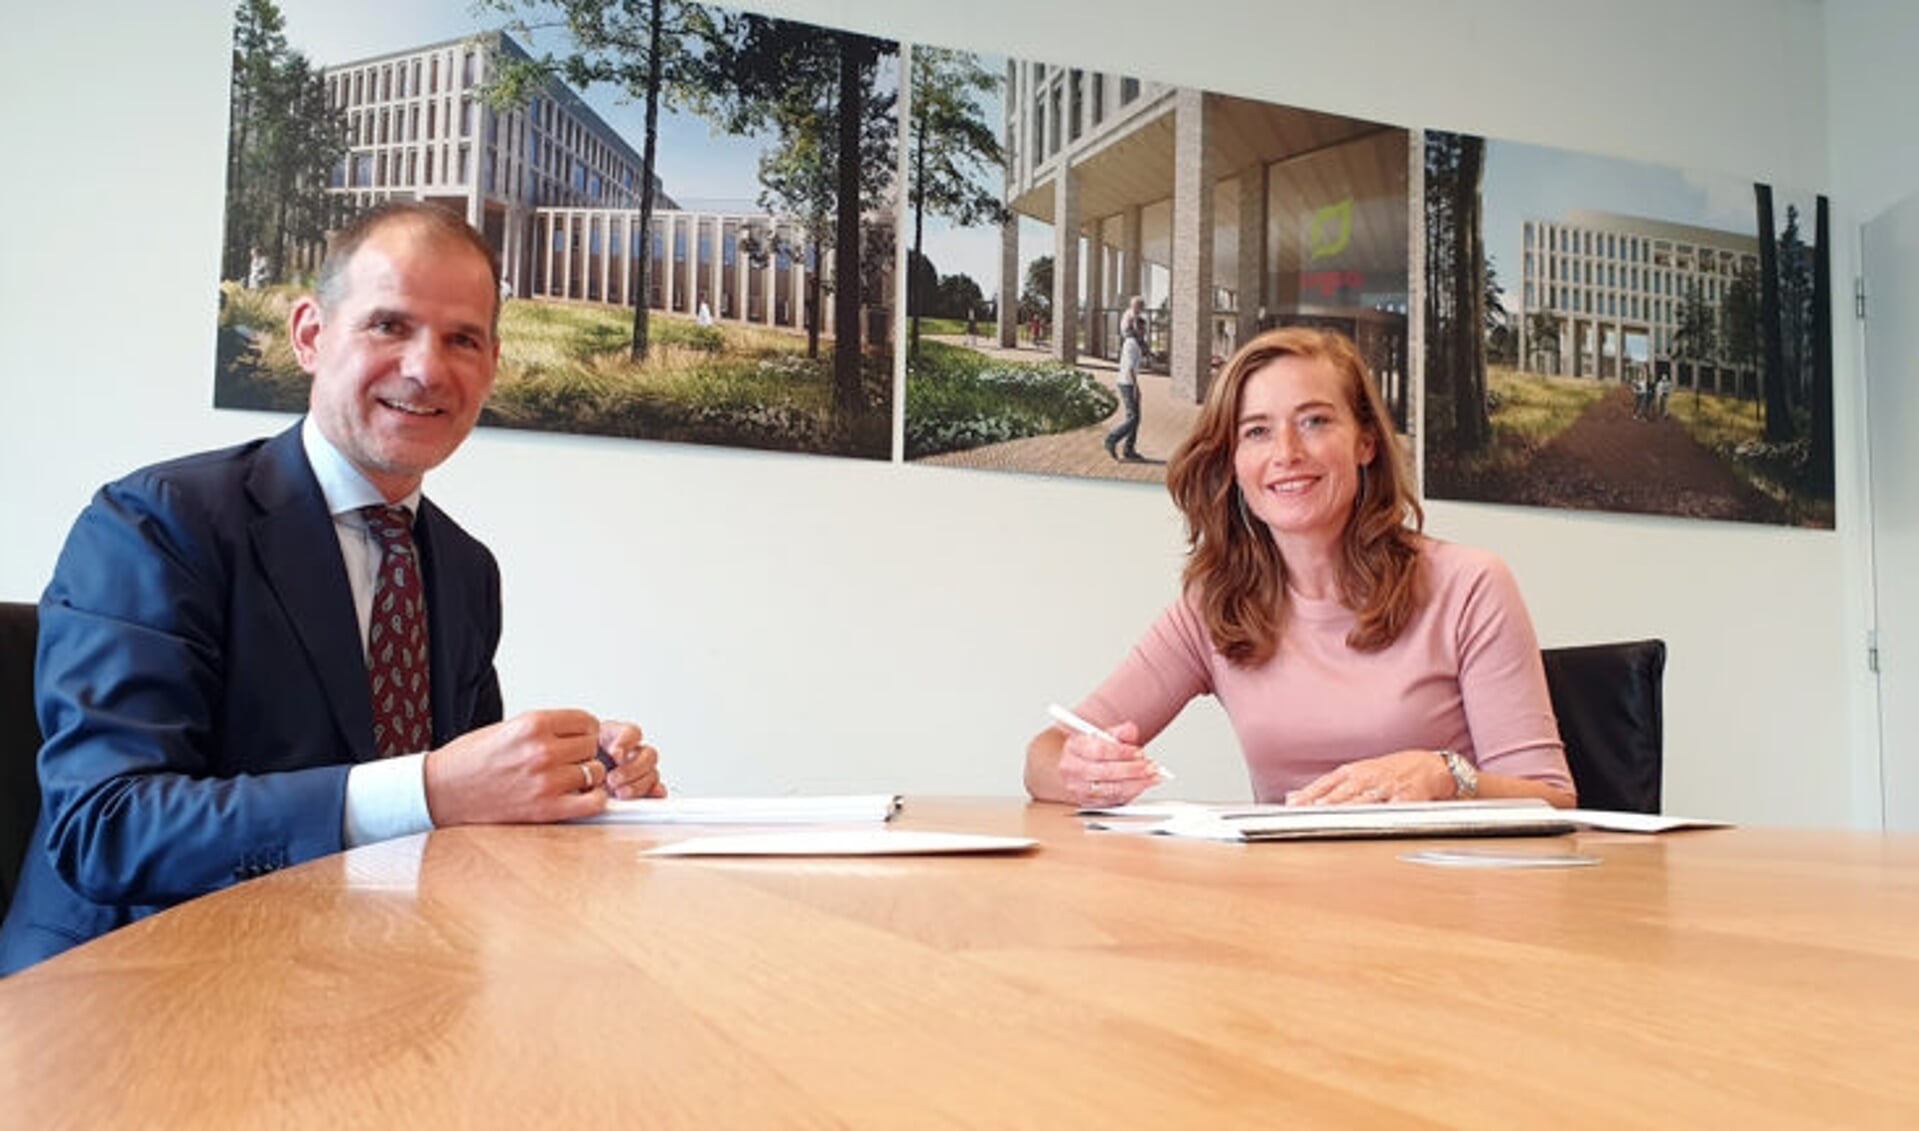 Clemie van Wanrooij (directeur Van Wanrooij projectontwikkeling) en Janneke Brink-Daamen (voorzitter raad van bestuur Tergooi) ondertekenen de koopovereenkomst.